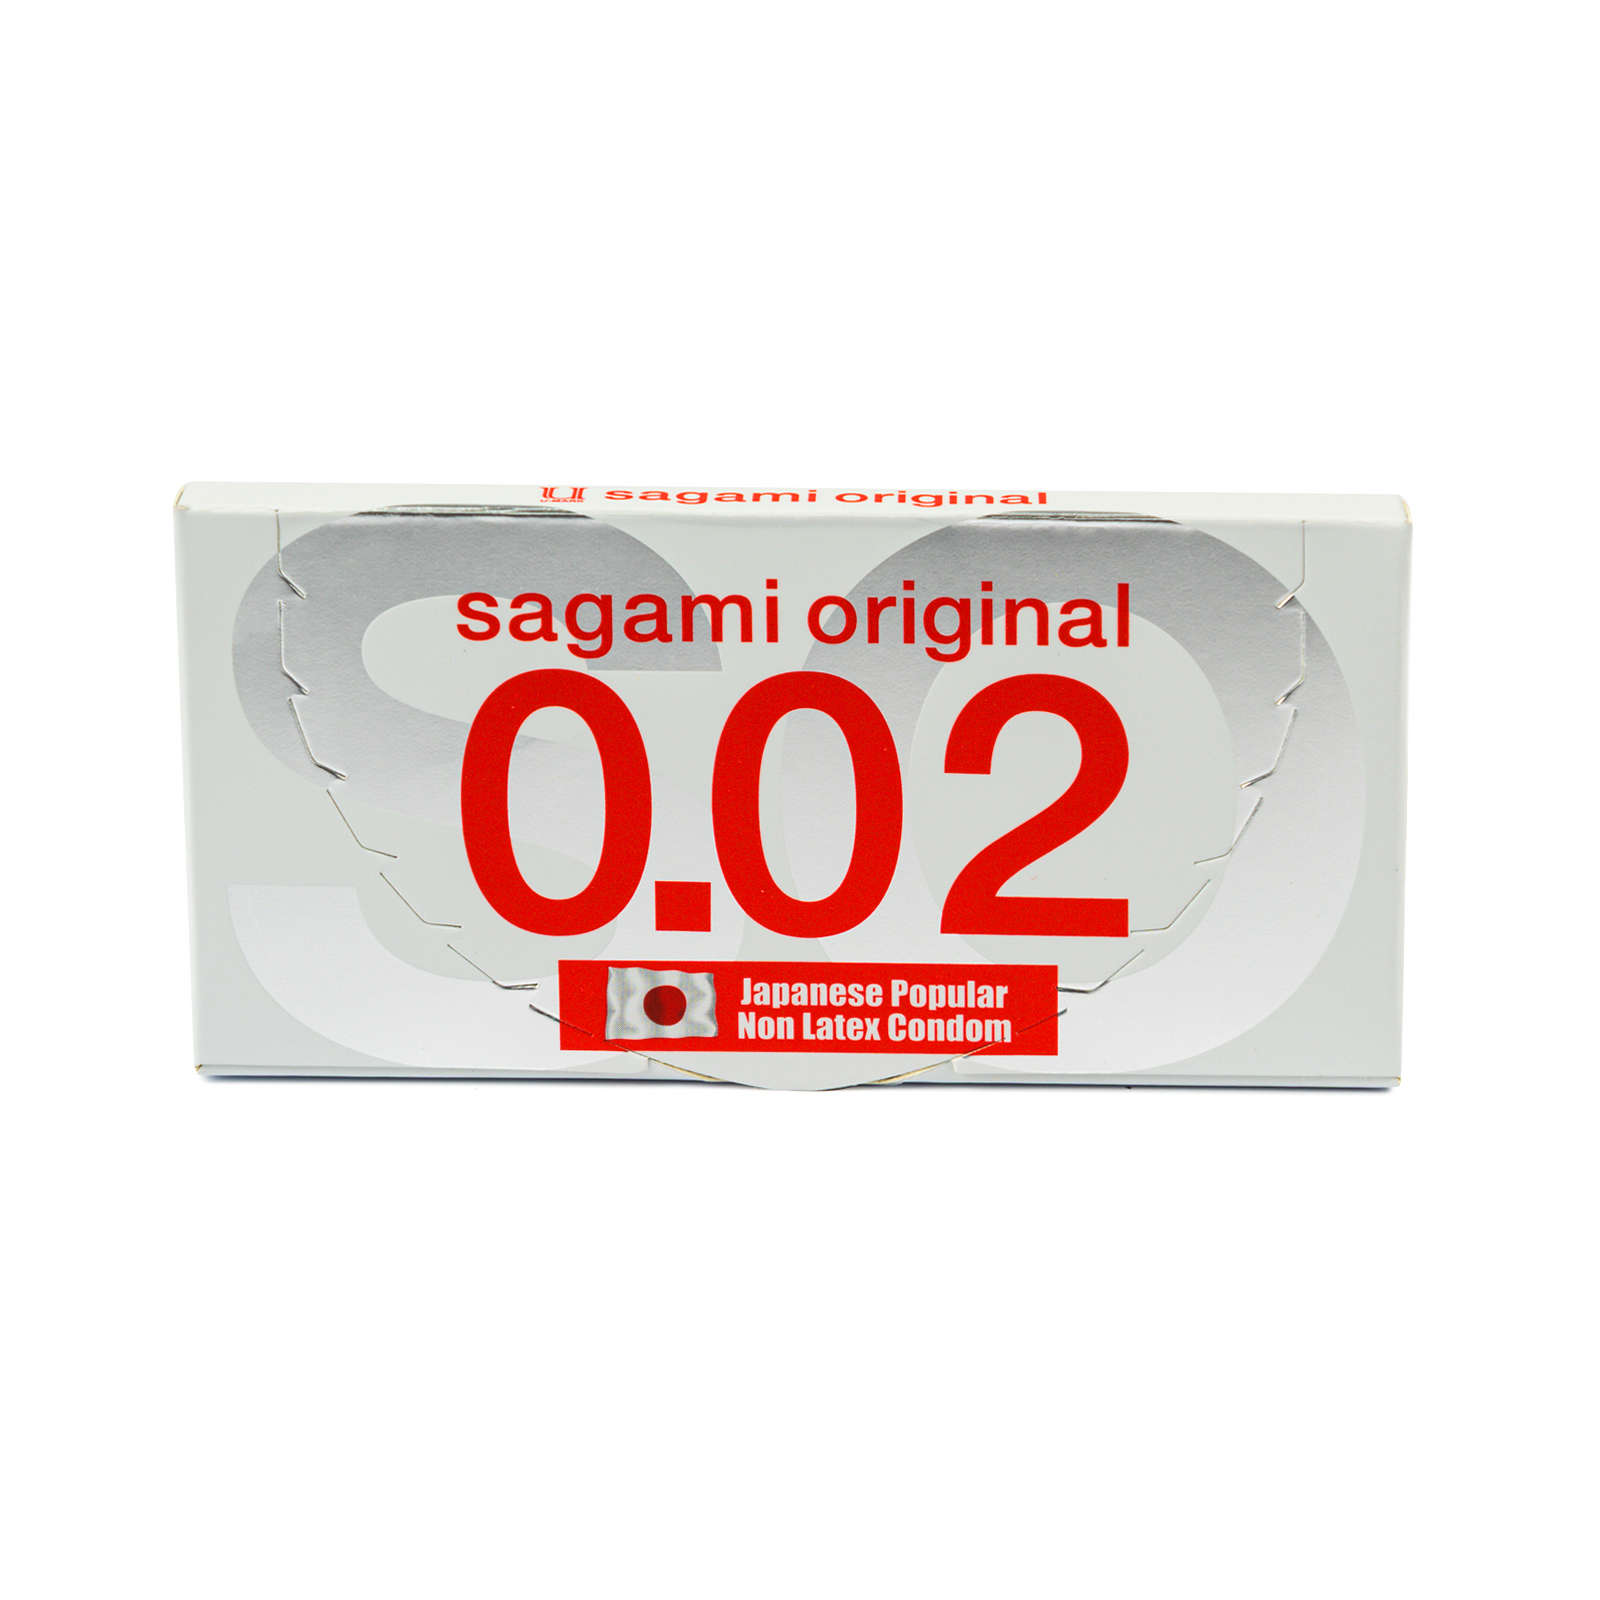 Купить Original ультратонкие, Презервативы Sagami Original 002 полиуретановые 2 шт., прозрачный